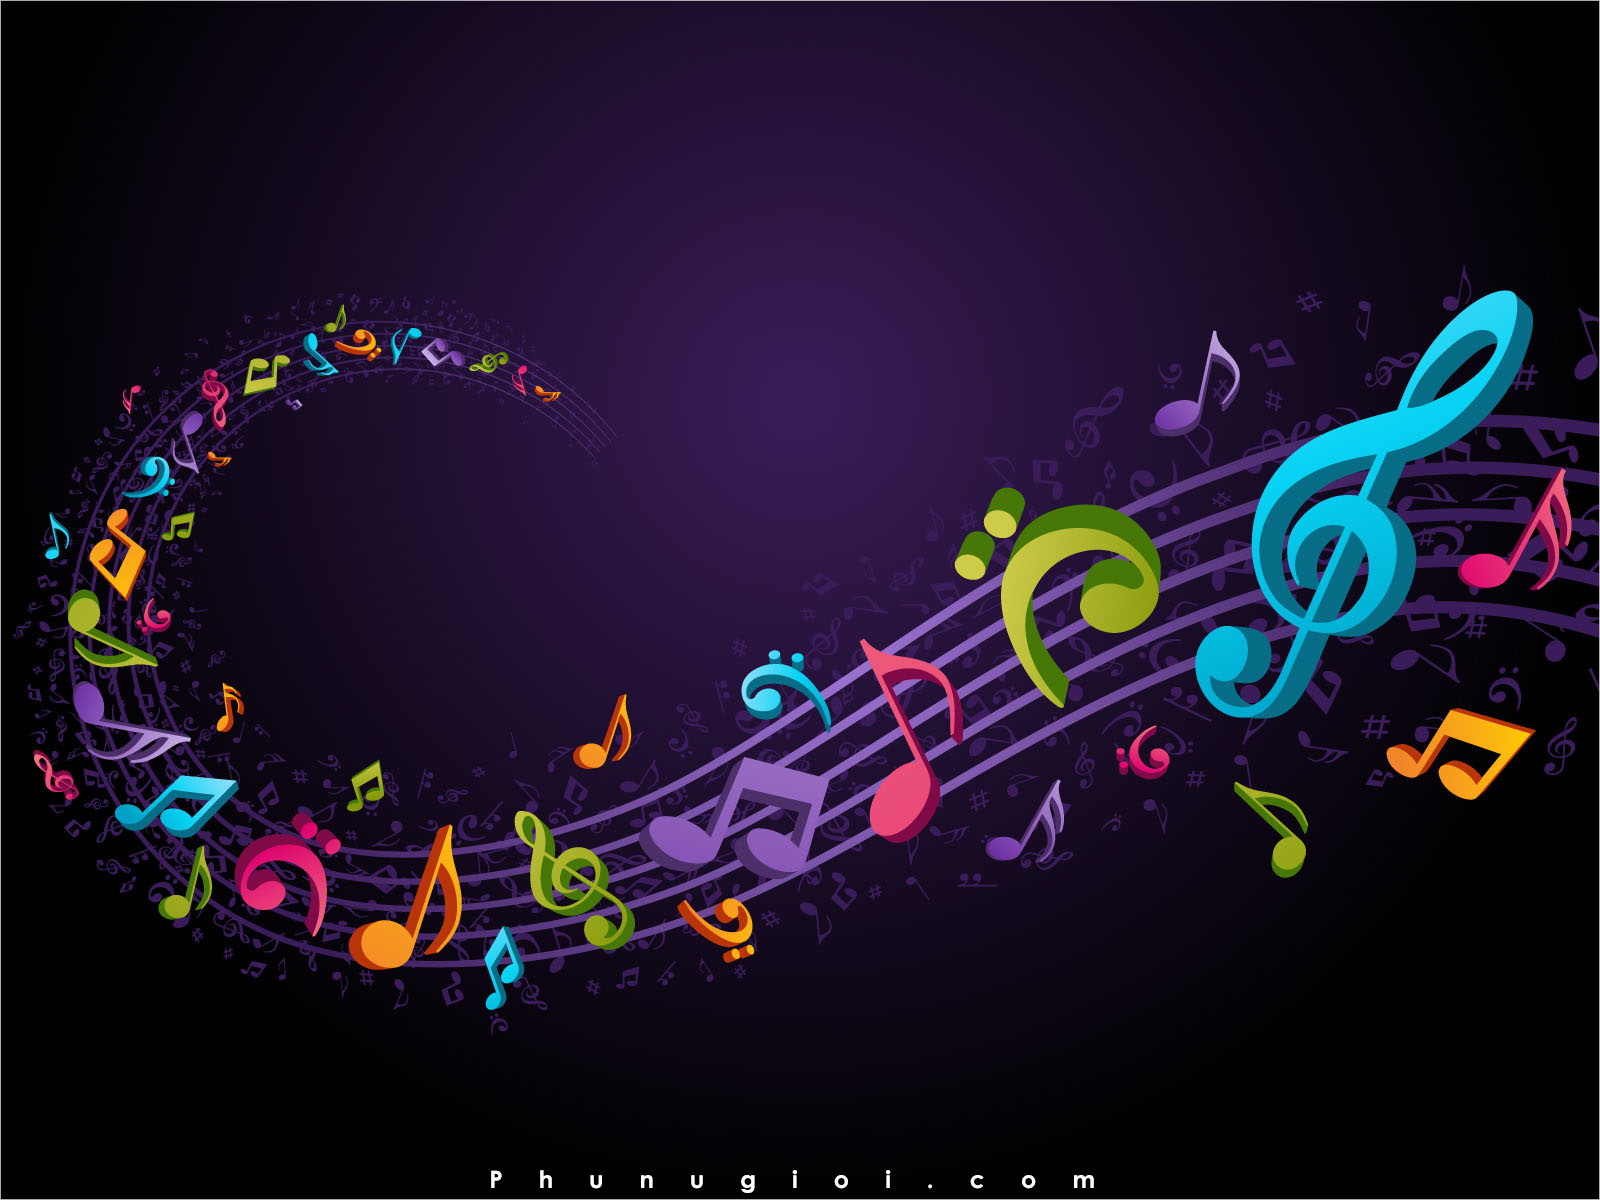 âm nhạc hình nền  Tìm với Google  Music wallpaper Iphone backgrounds  tumblr Cool wallpapers music